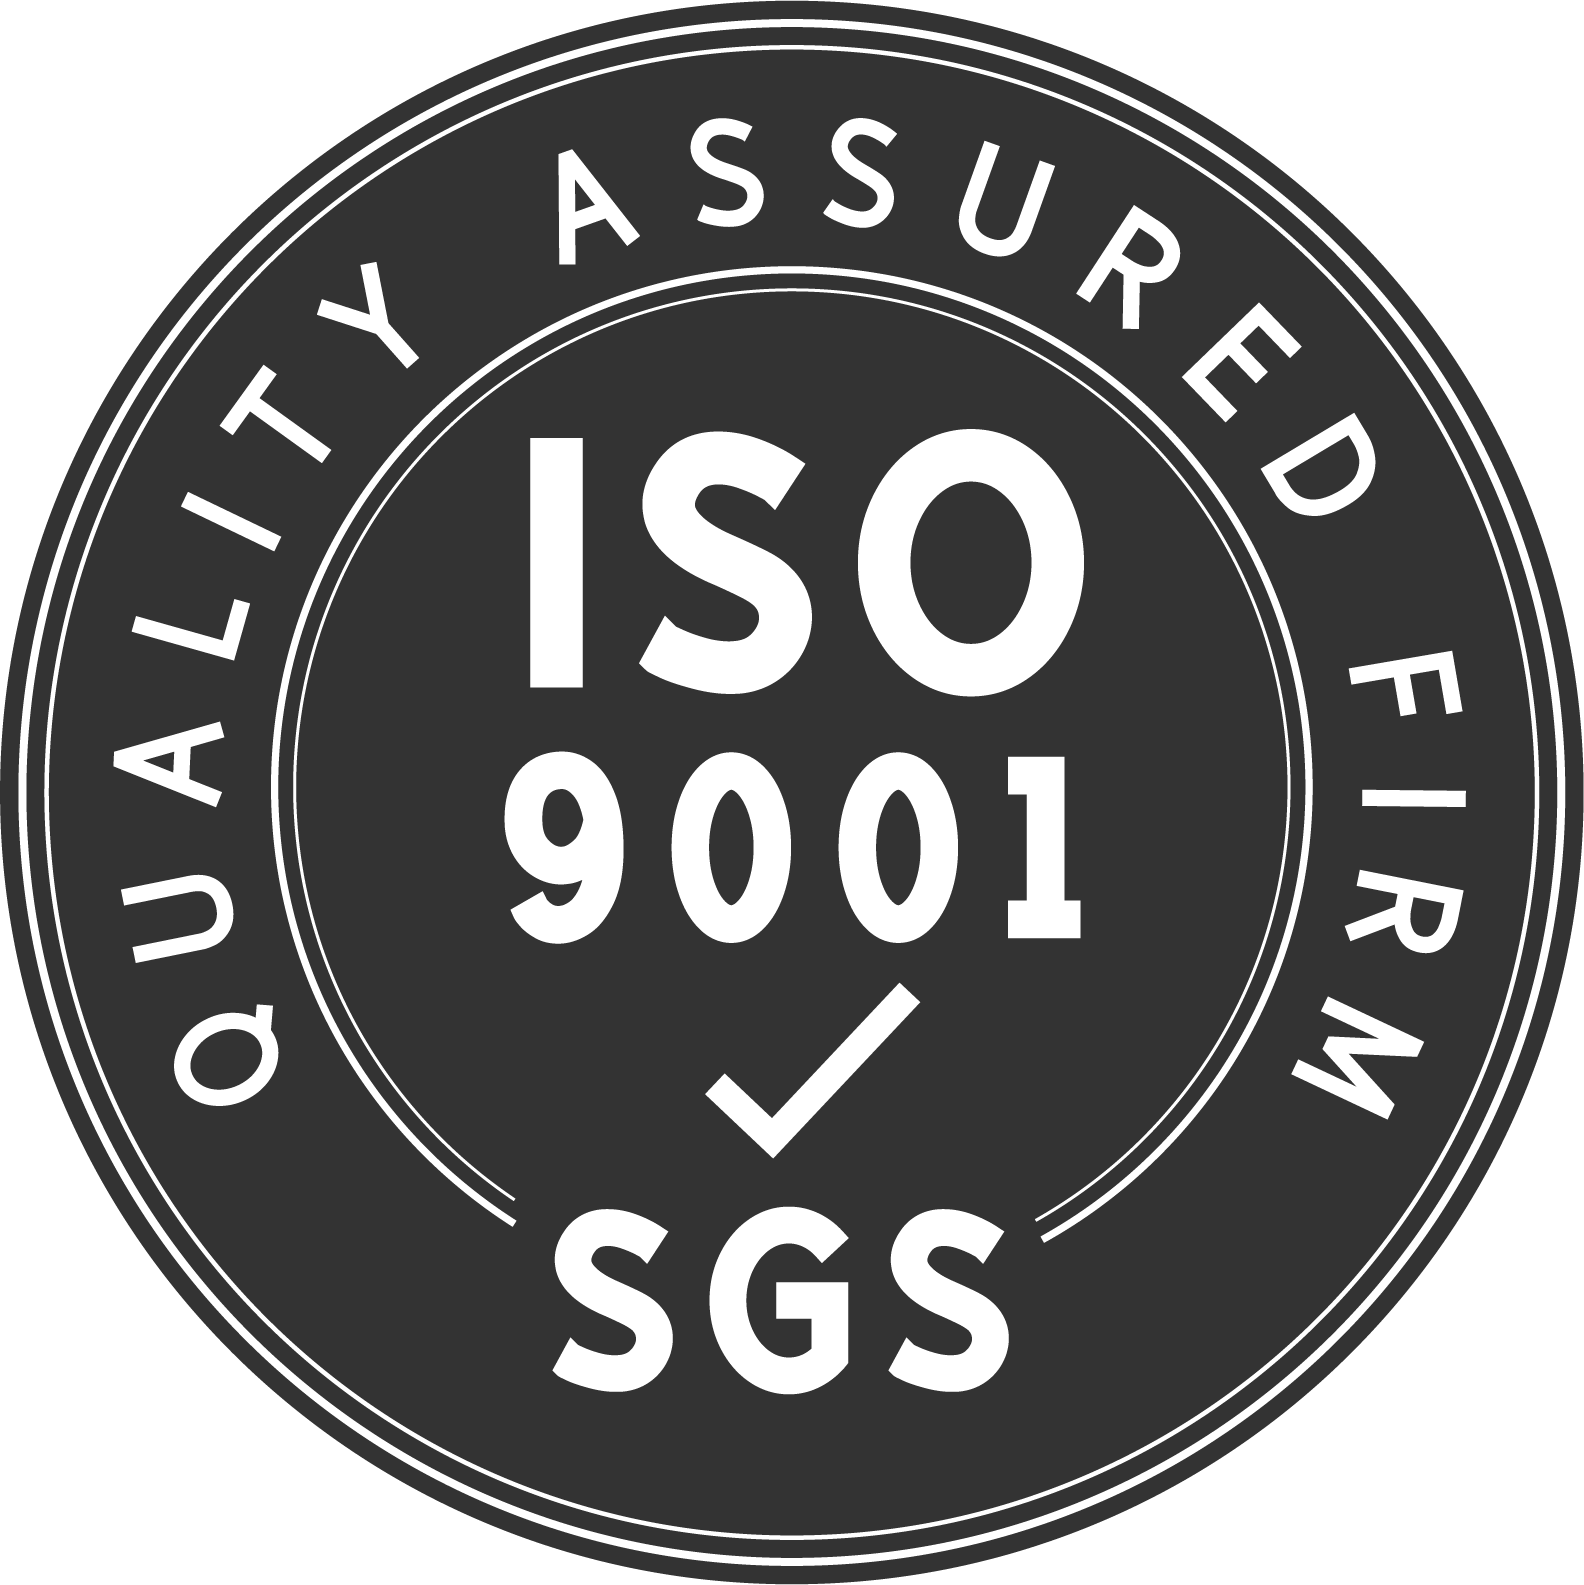 Notre usine est un fabricant certifié ISO9001 : 2005 de produits de haute qualité.